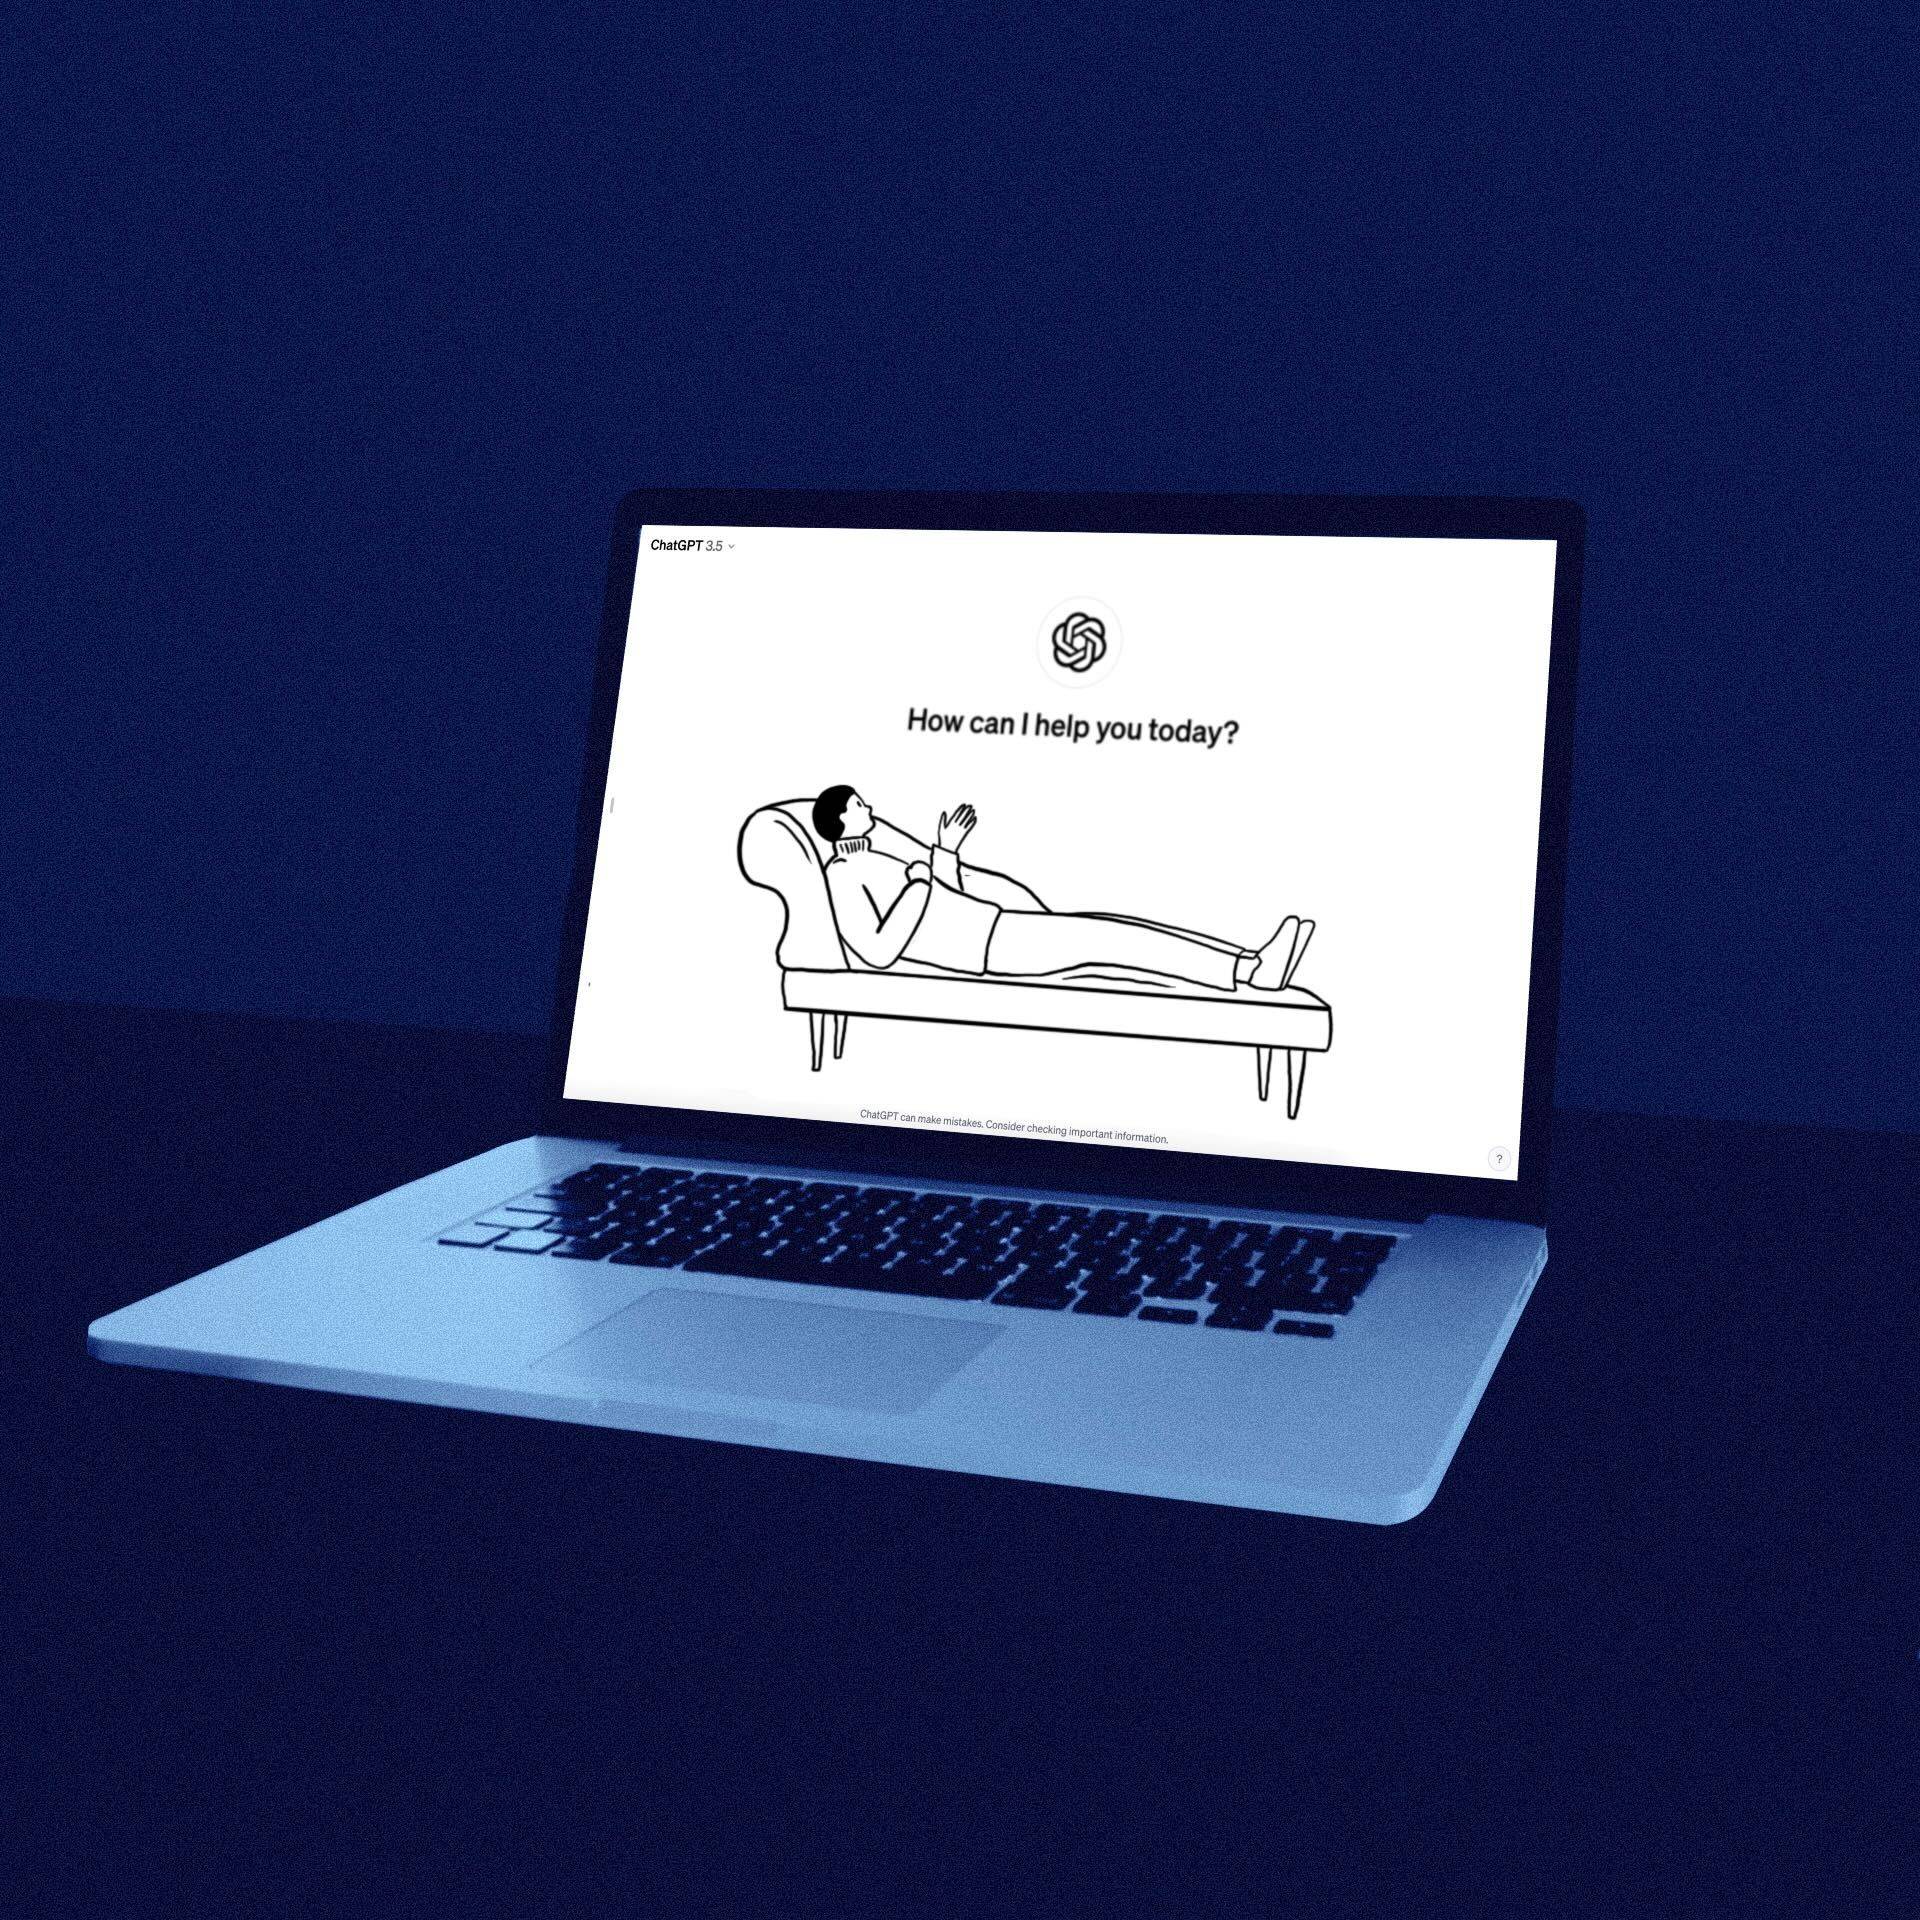 Ilustracja przedstawiająca otwarty laptop, na ekranie widać rysunek człowieka na kozetce, symbol ChatGPT oraz pytanie How can I help you today?